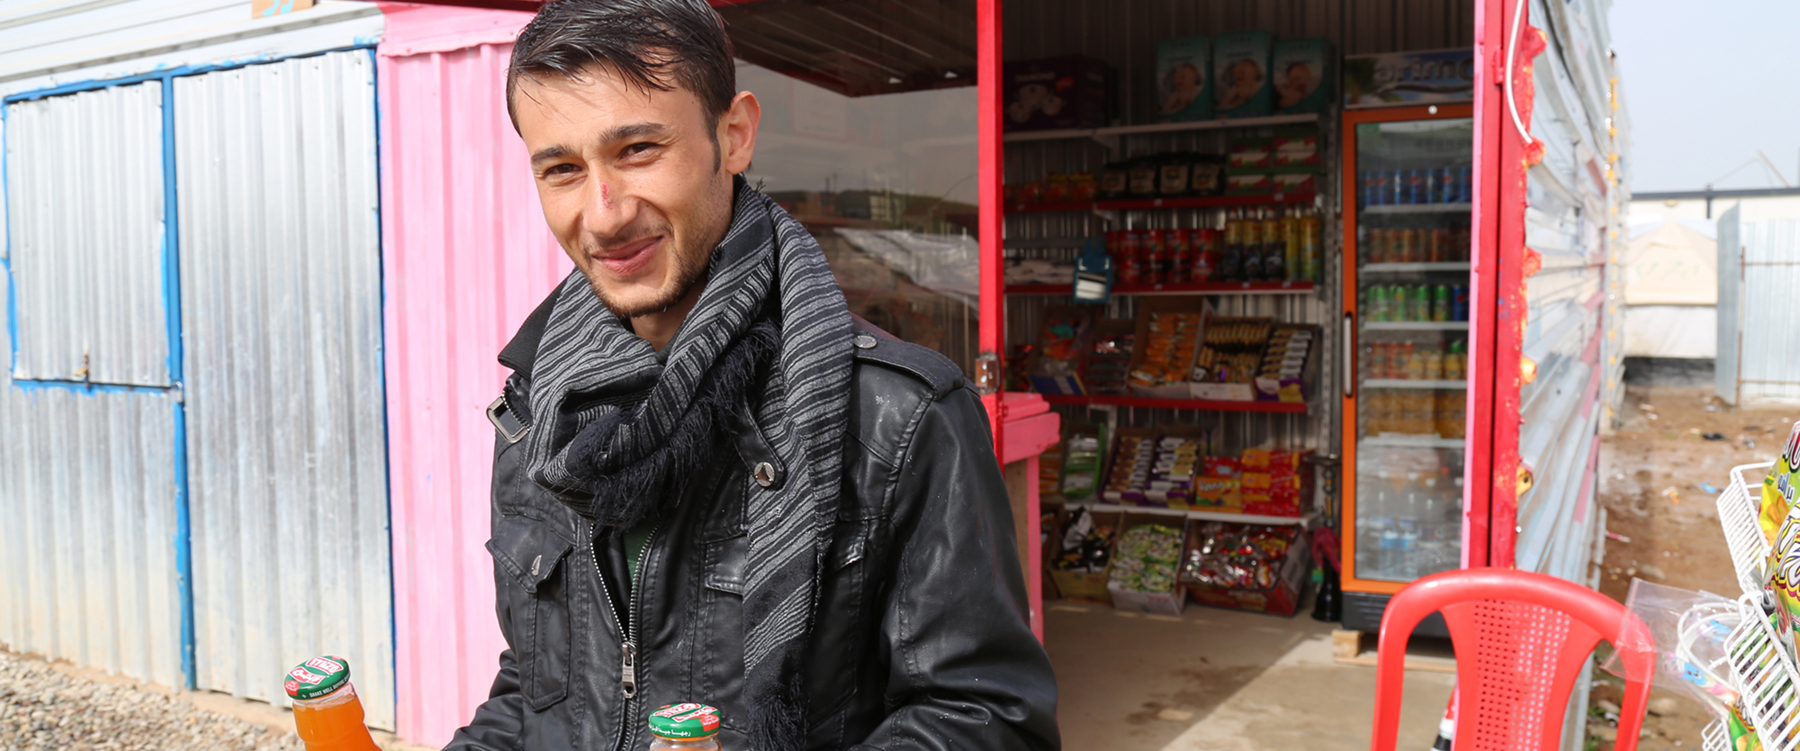 Een Syrische vluchteling voor zijn winkel in het Gawer Gosik-kamp. Mogelijk gemaakt door een gezamenlijk project van de Internationale Organisatie voor Migratie (IOM) en de UNHCR, de organisatie voor vluchtelingen van de Verenigde Naties. | Foto: Taryn Fivek | IOM 2015